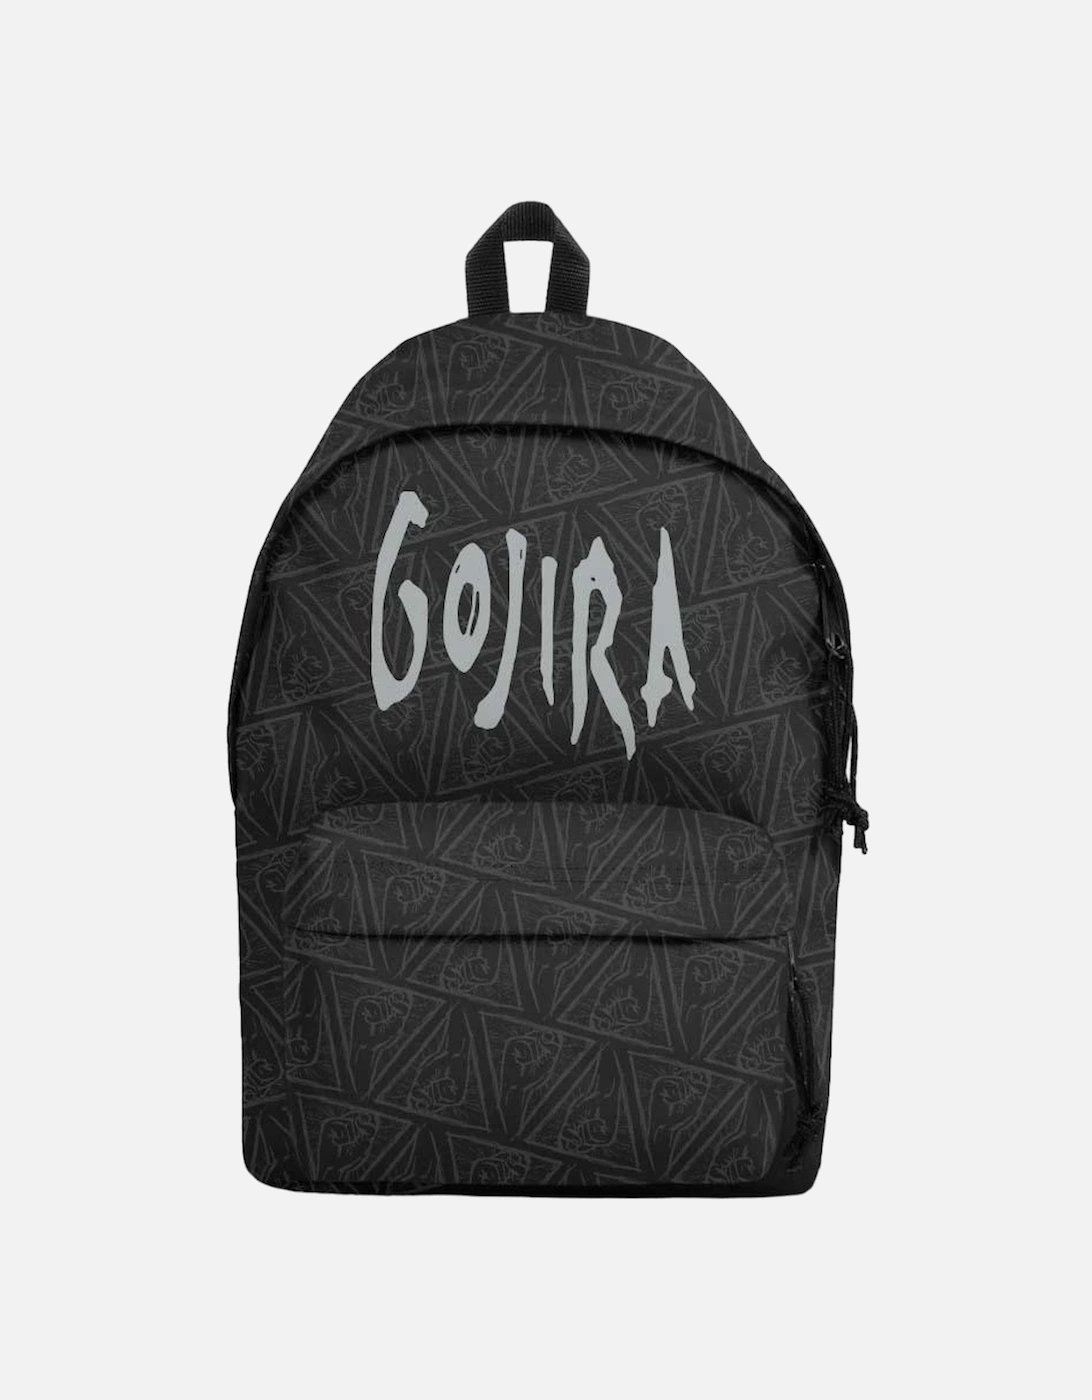 Powerglove Gojira Backpack, 2 of 1